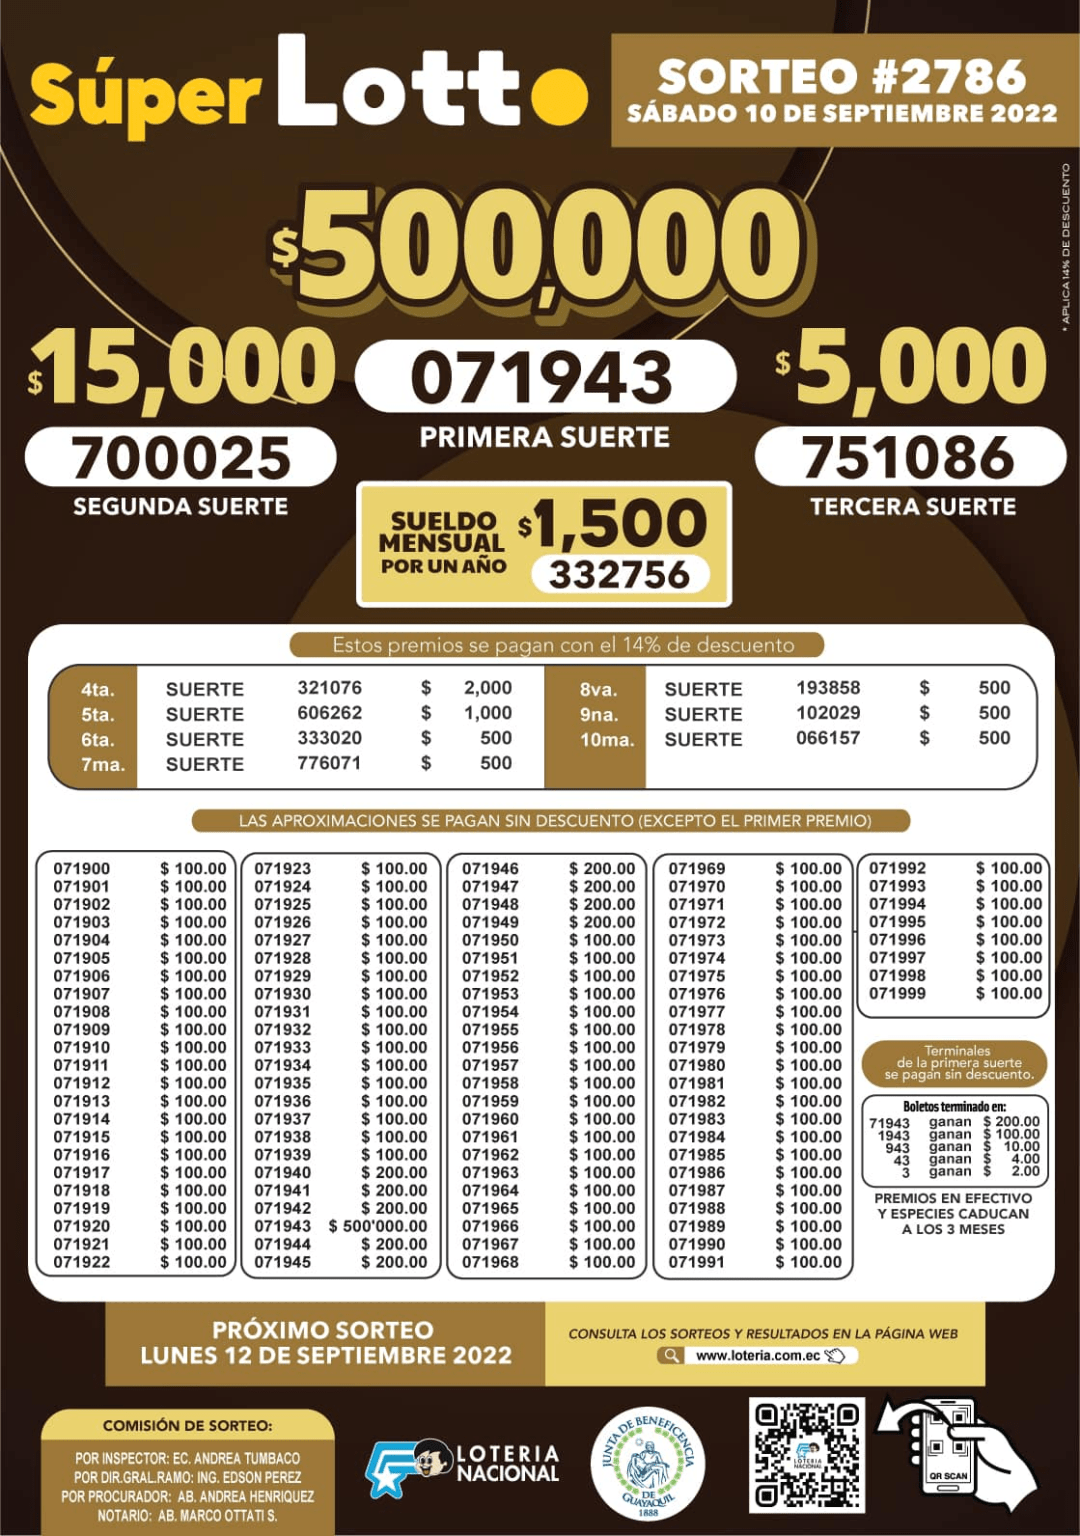 Resultados y Boletín Super Lotto Sorteo 2786 Consulta los boletos